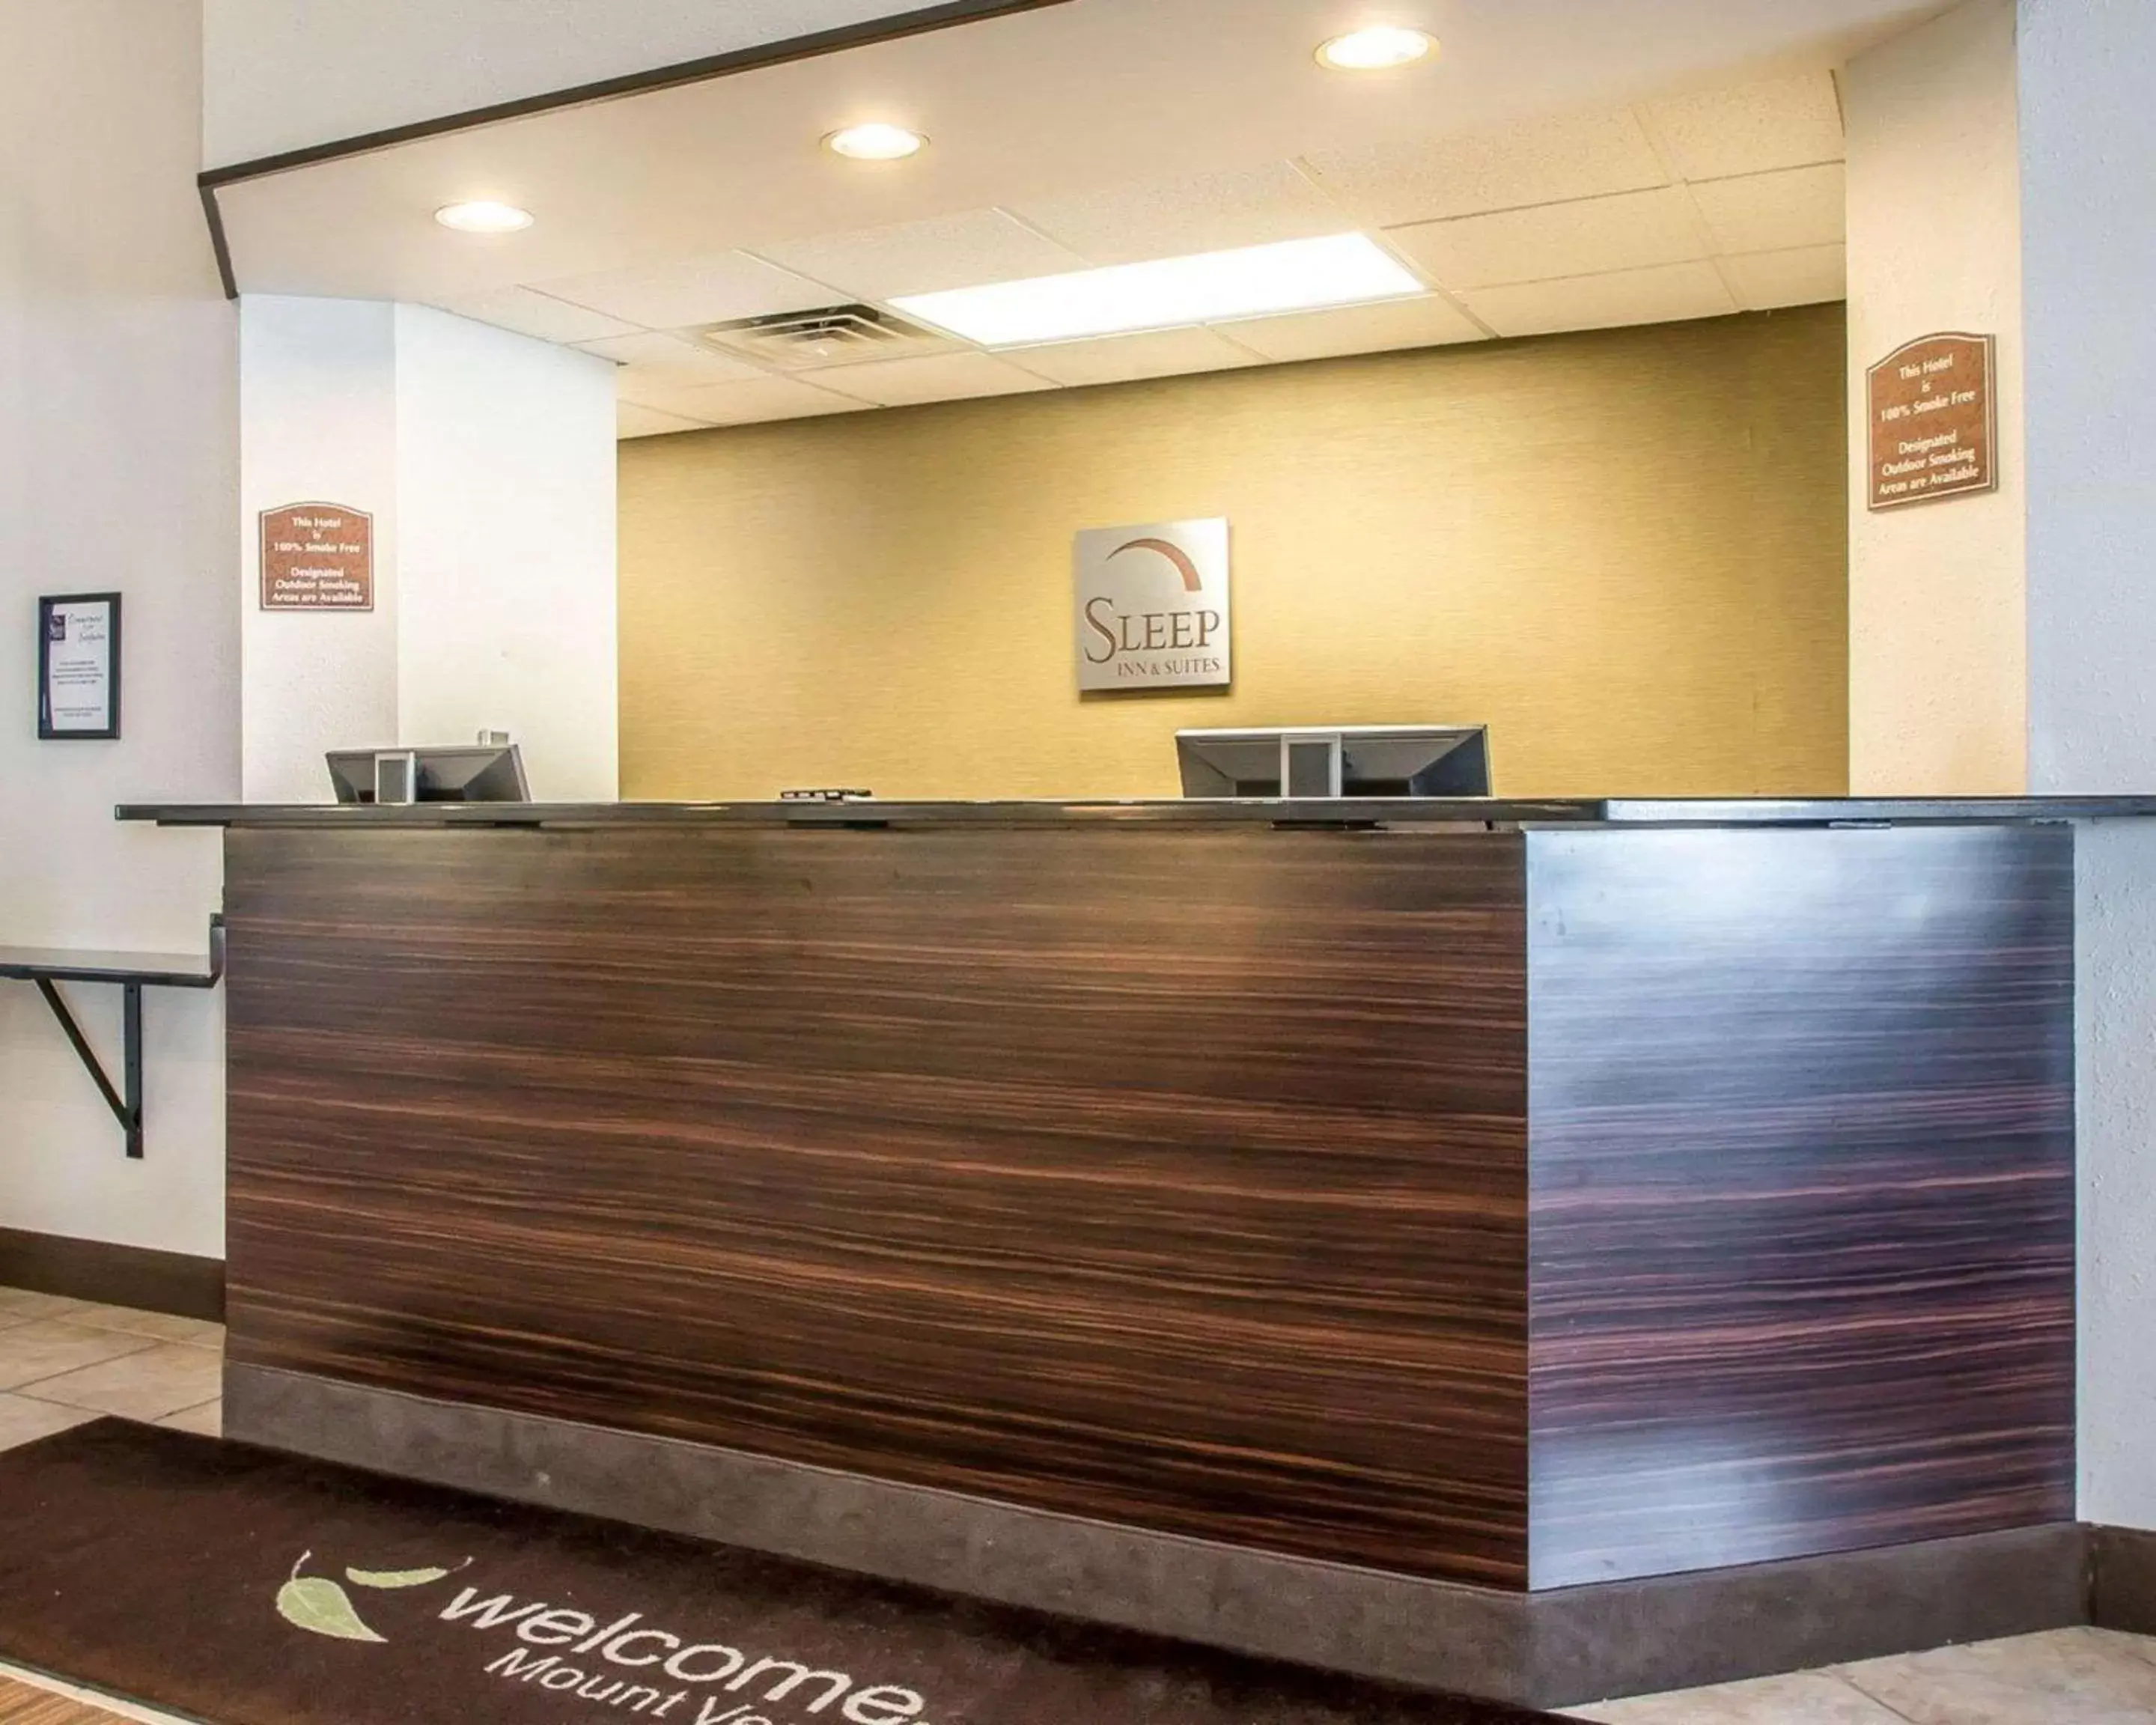 Lobby or reception, Lobby/Reception in Sleep Inn & Suites Mount Vernon